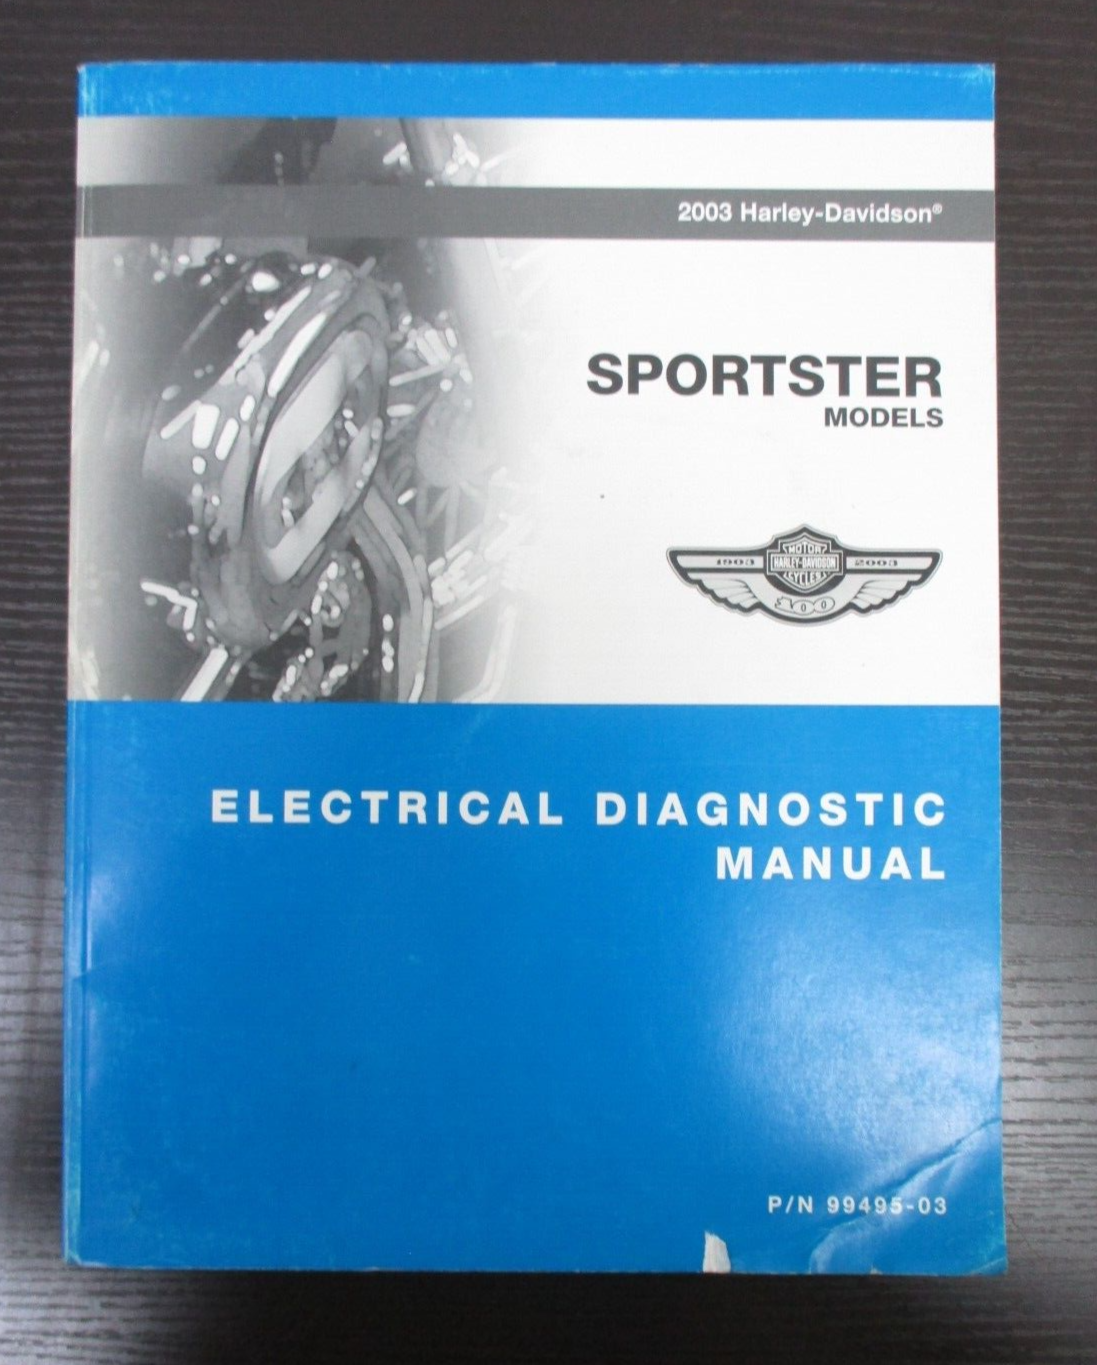 Harley-Davidson Sportster Models 2003 Electrical Diagnostic Manual  99495-03